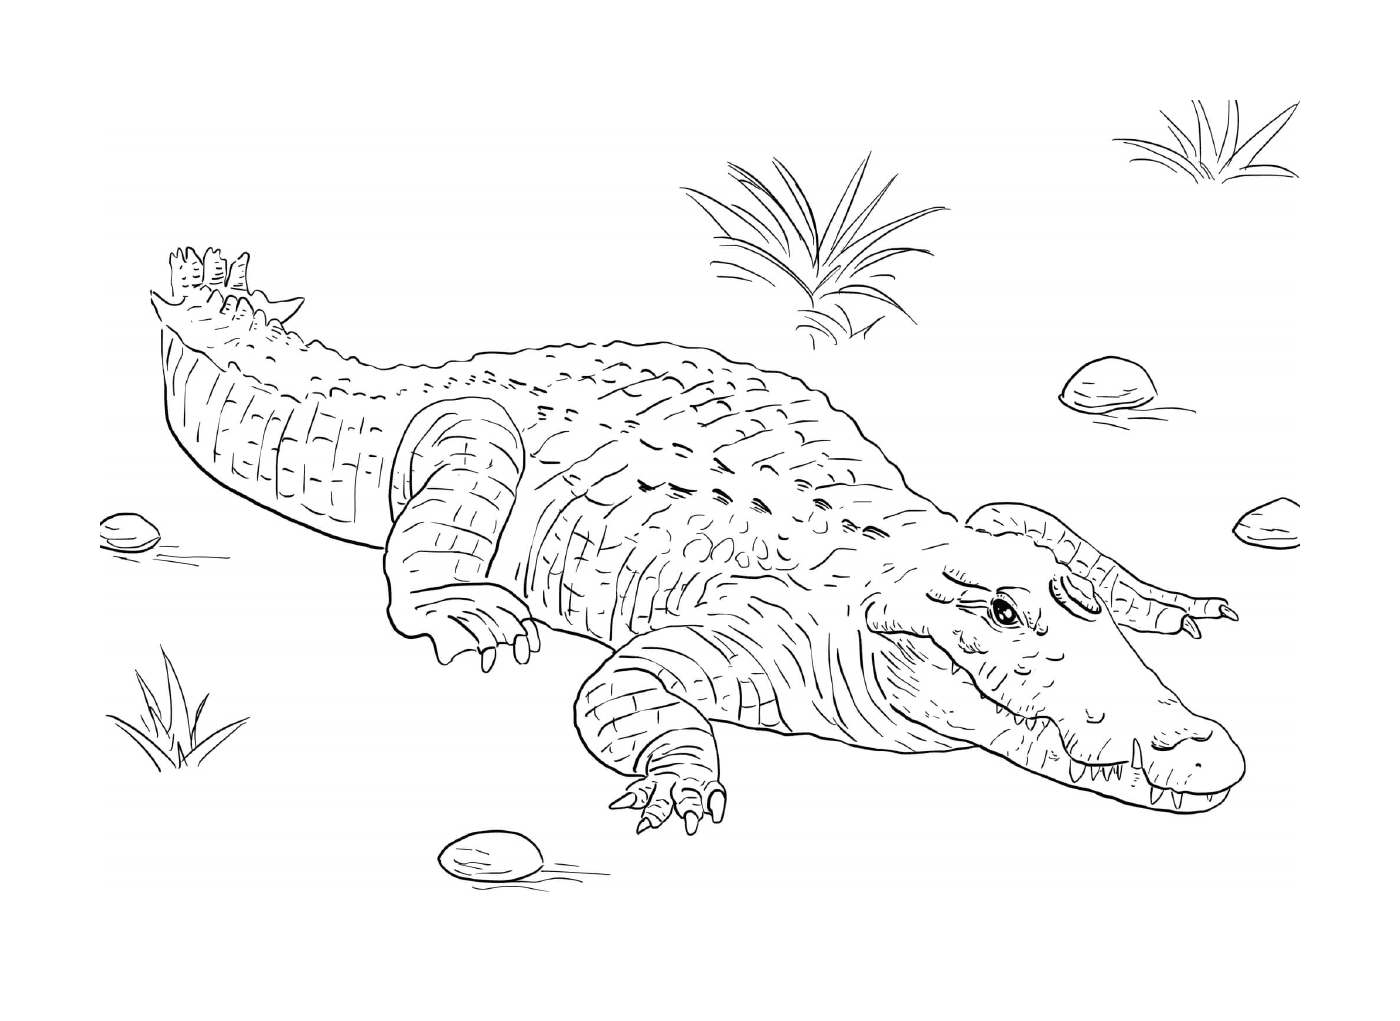  躺在地上的一条尼罗河鳄鱼 